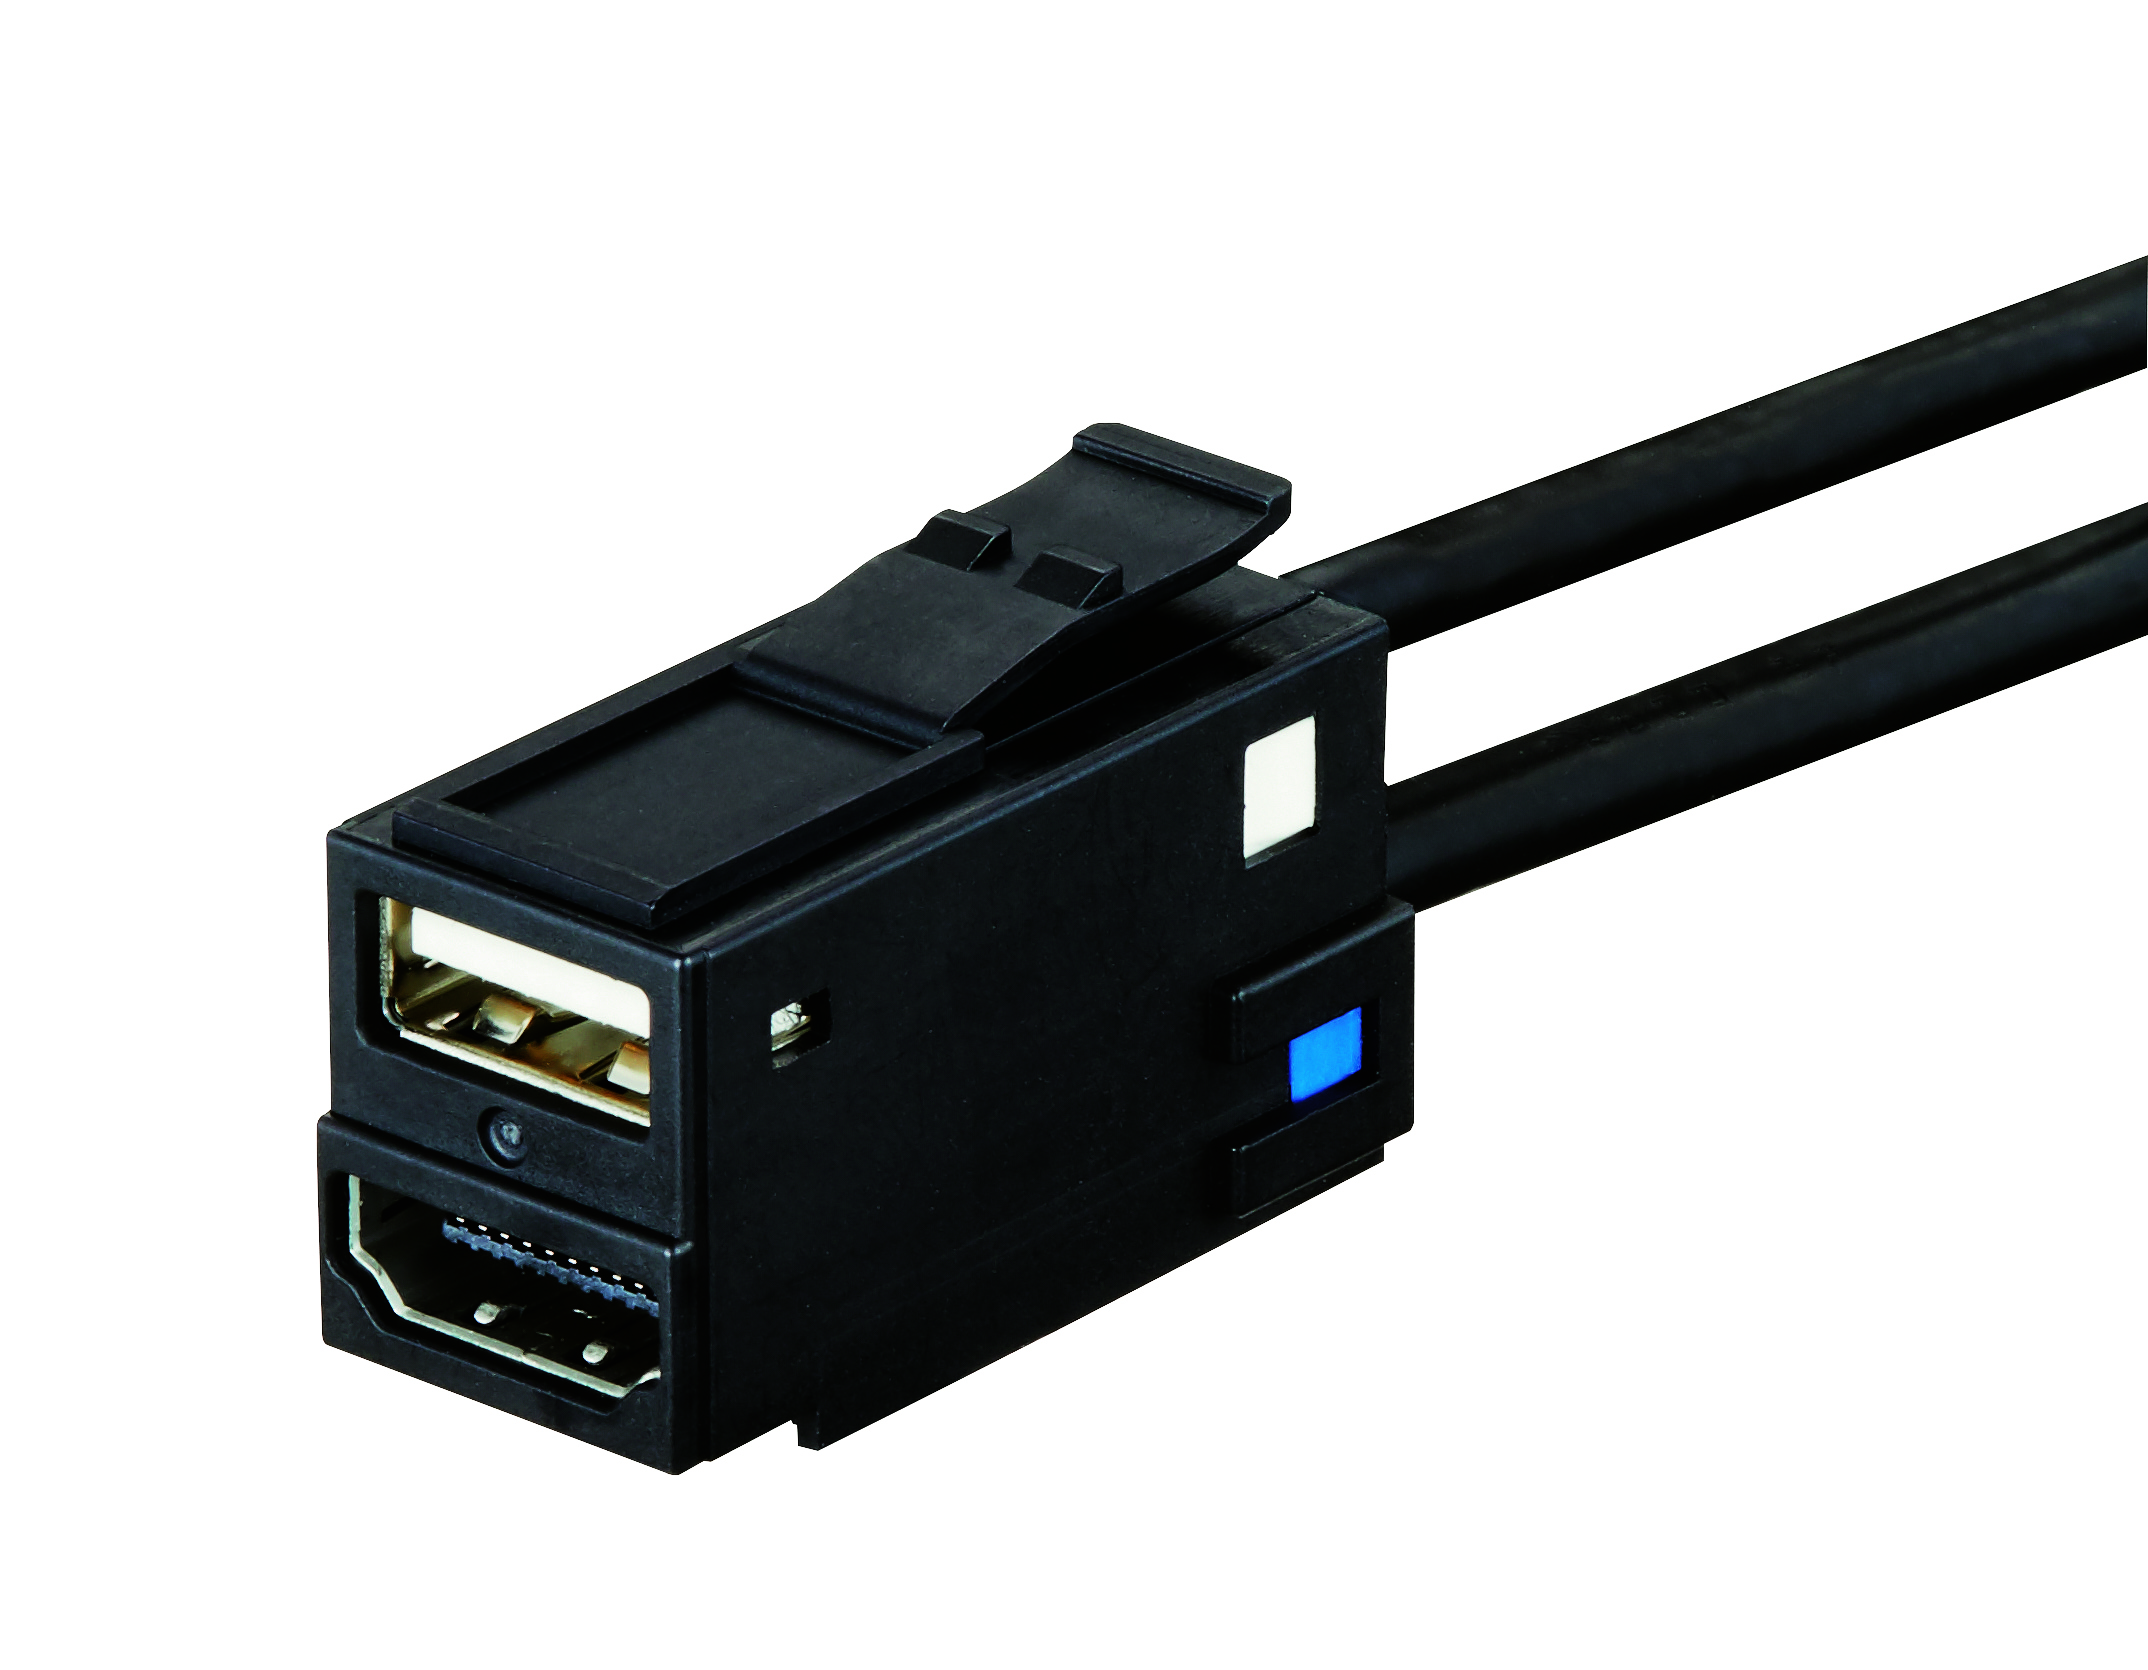 USB 2.0 Standard-A Socket and HDMI